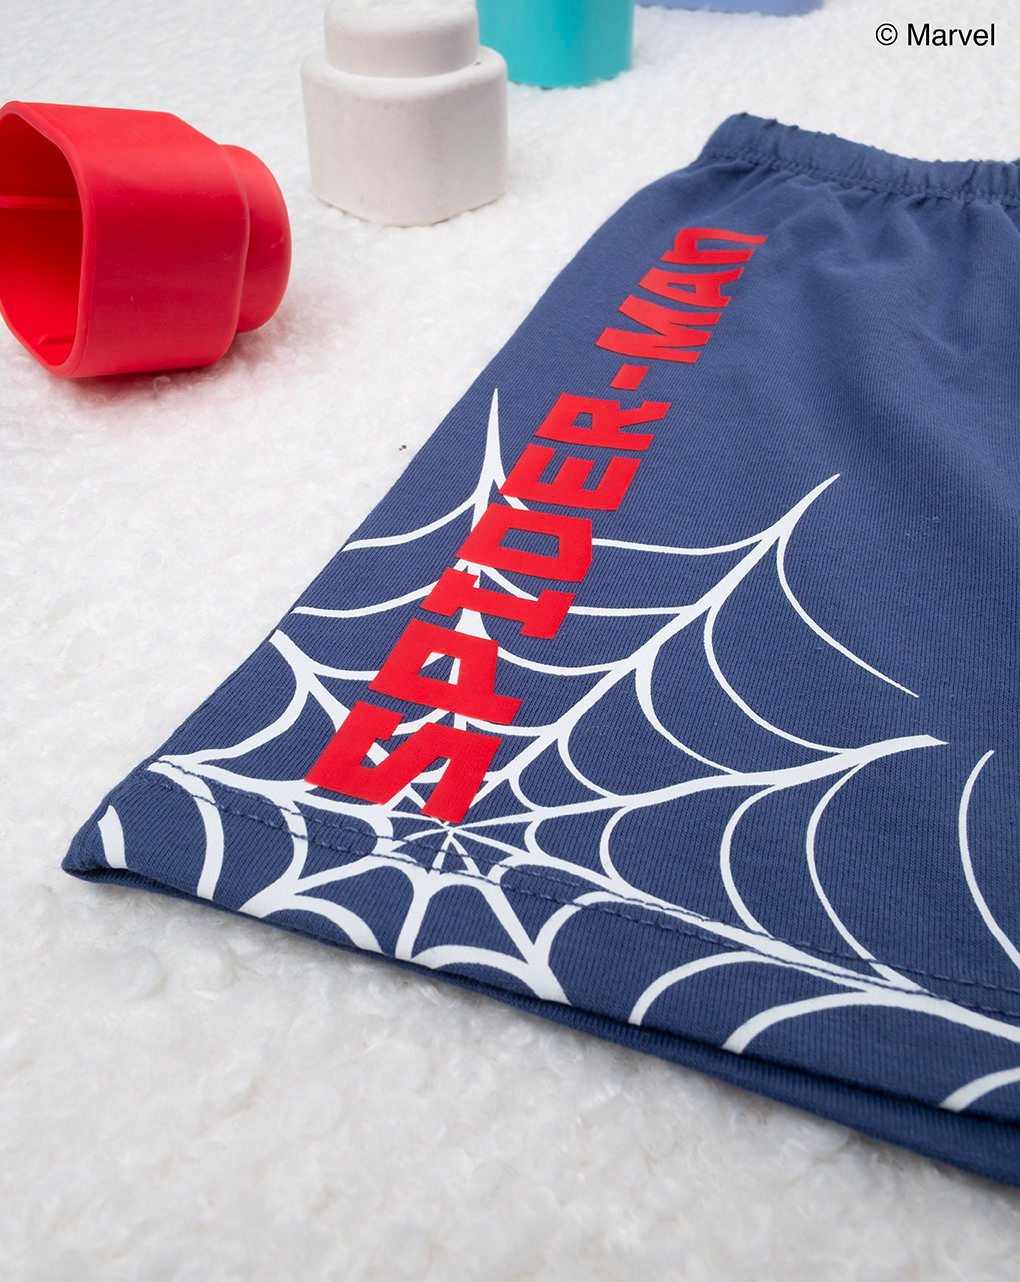 Pijama de bebé homem-aranha - Prénatal